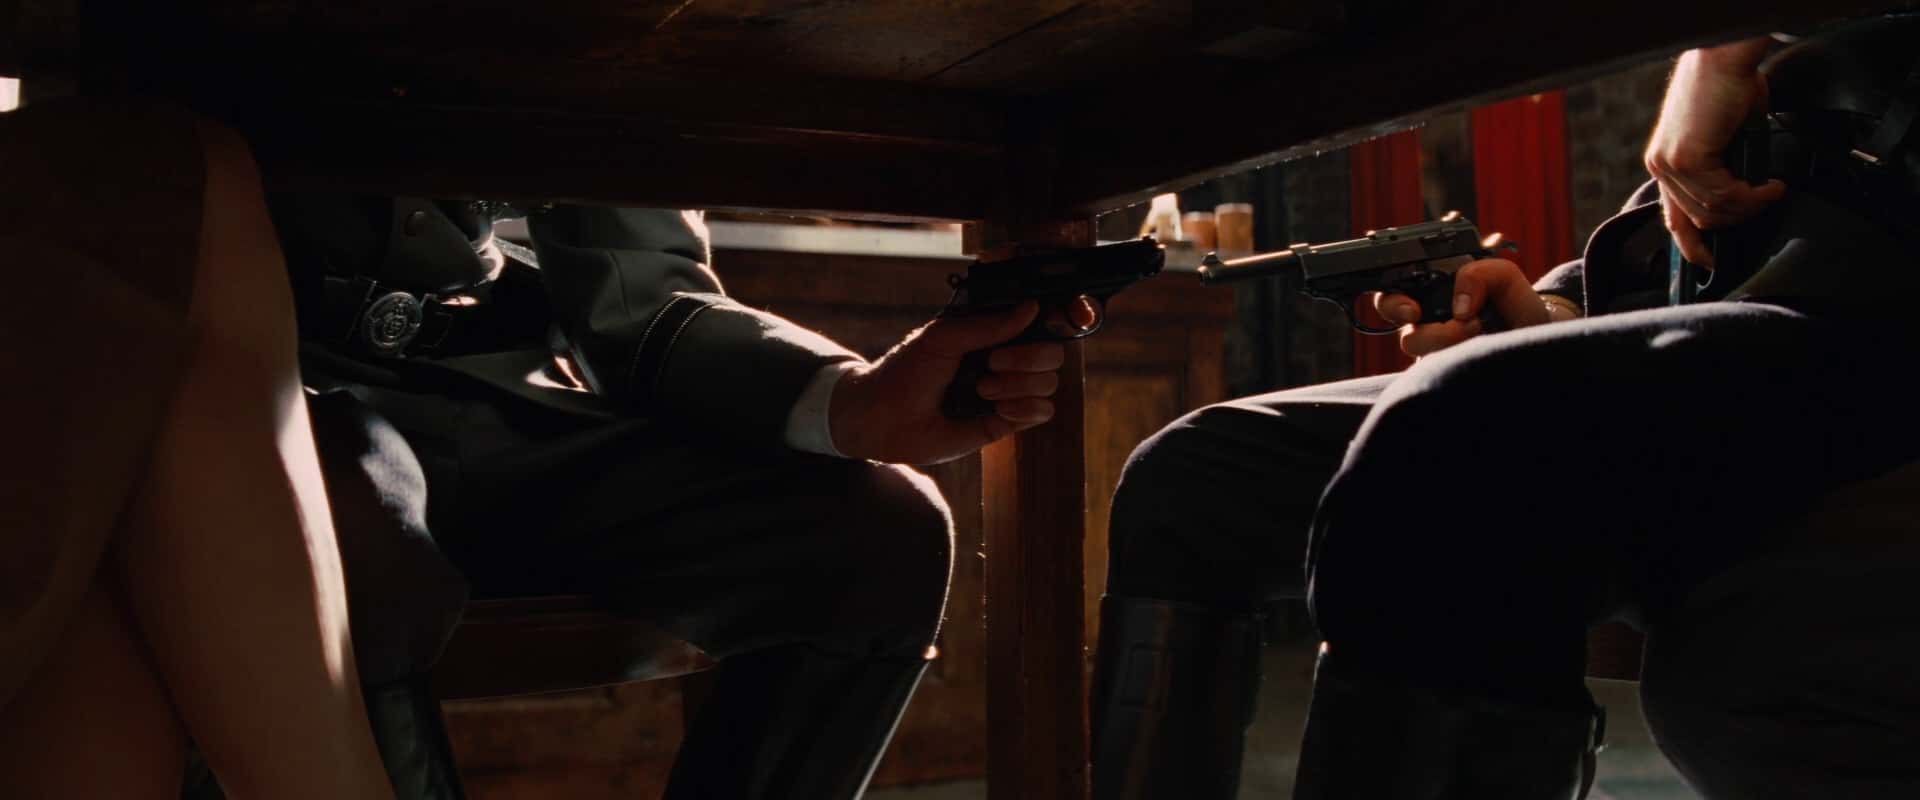 abaixo de uma mesa, dois homens seguram armas um contra o outro